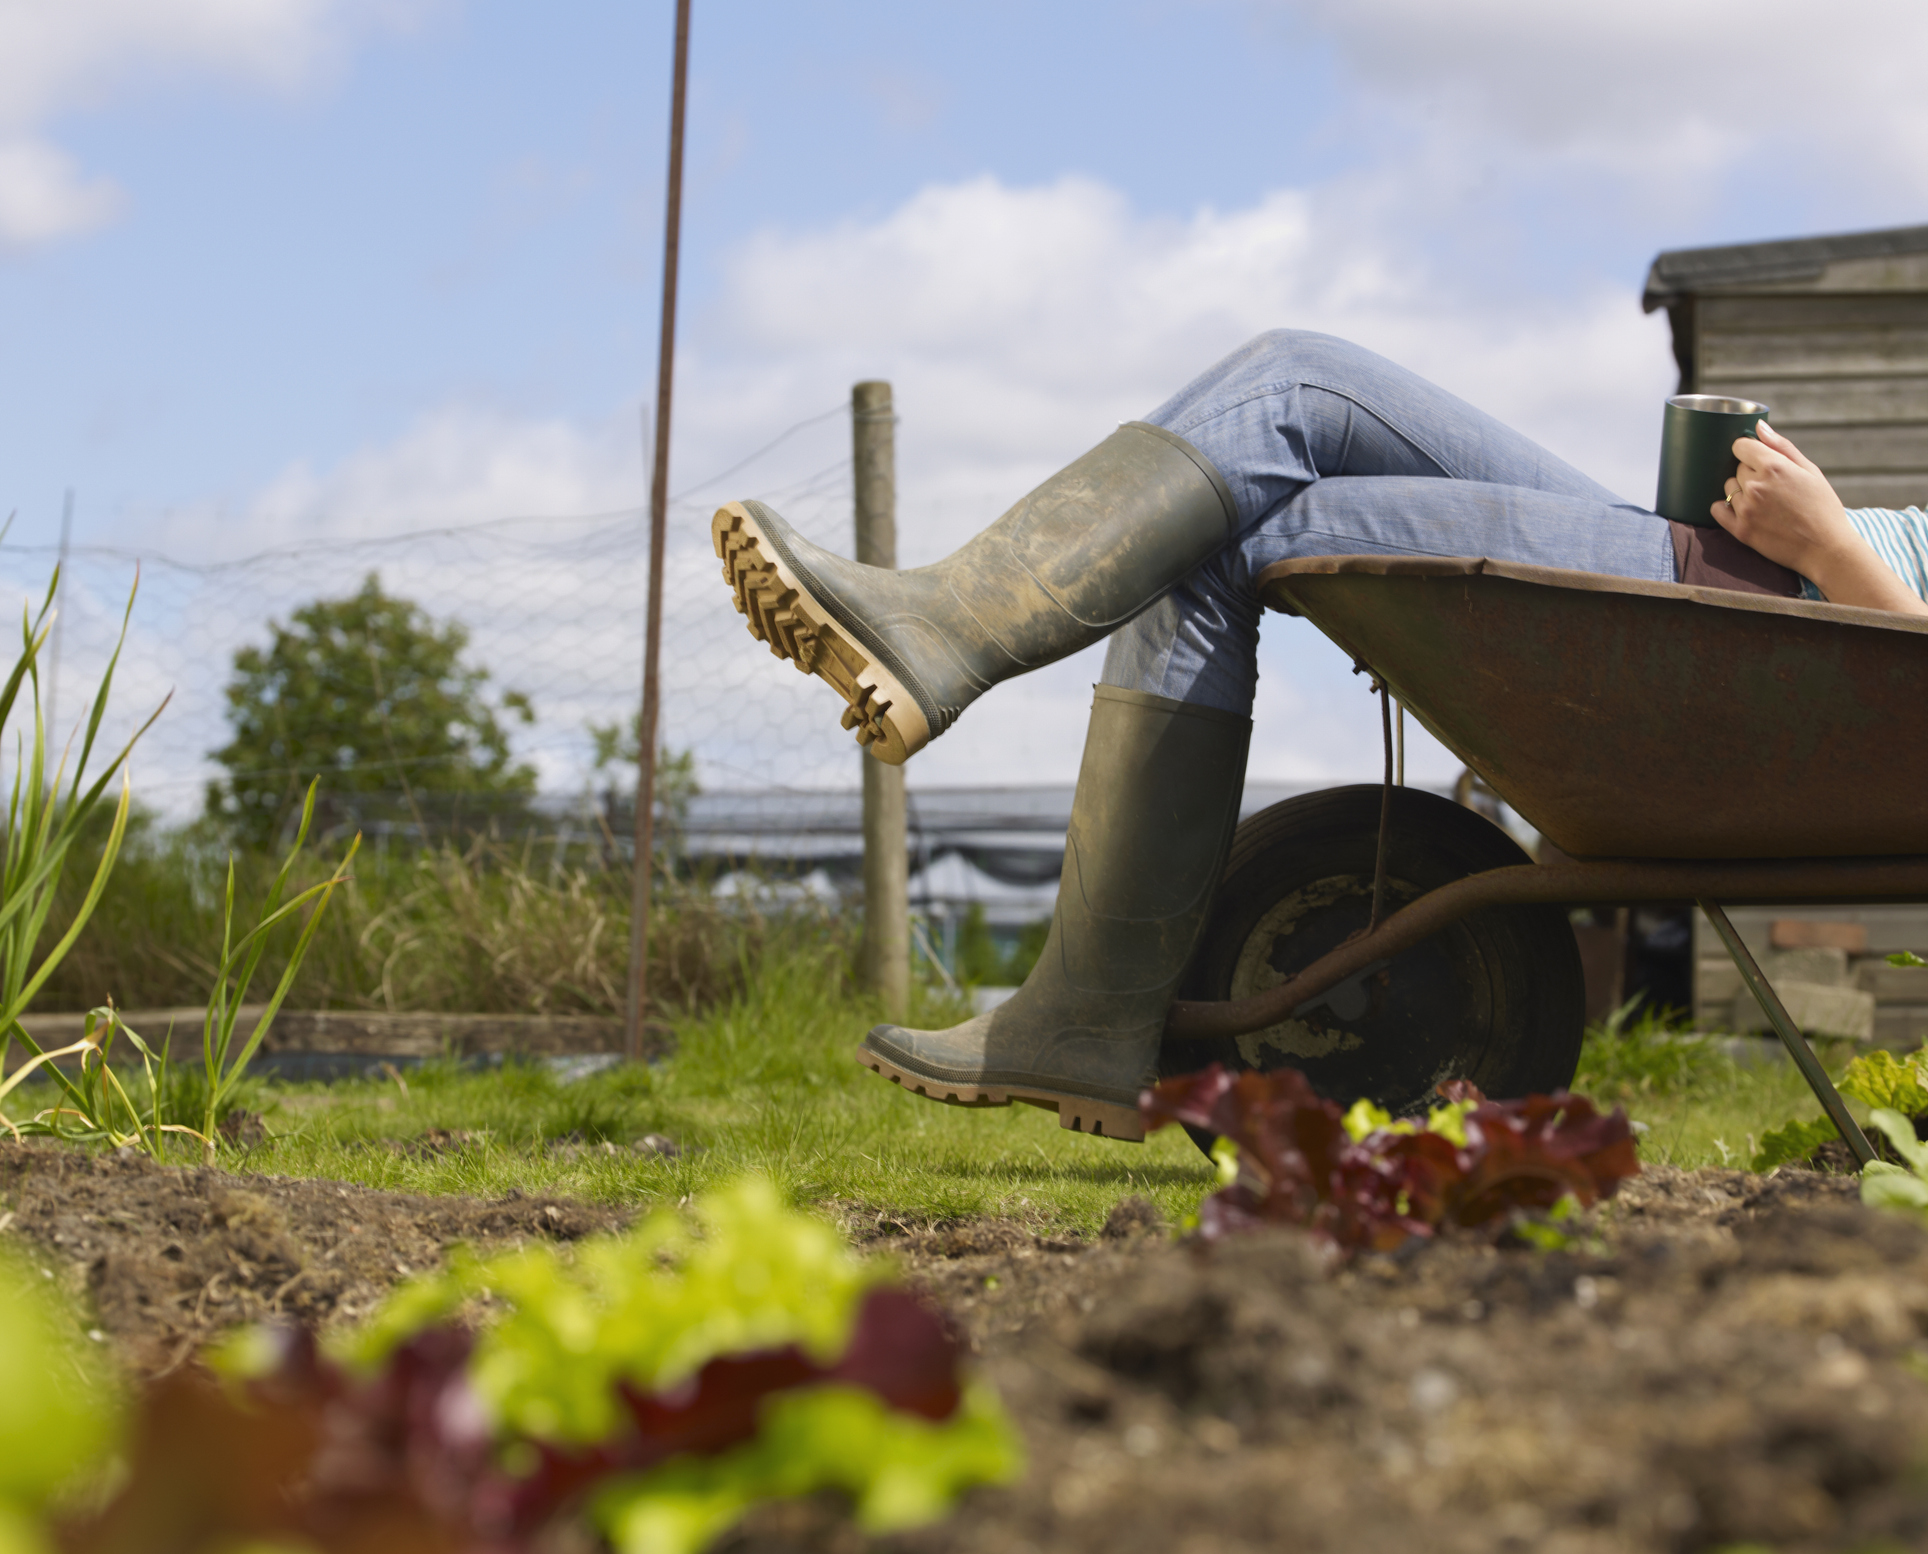 Découvrez huit astuces de jardinier à connaître absolument pour simplifier votre quotidien au jardin ! Copyright (c) Mike Harrington/Istock.